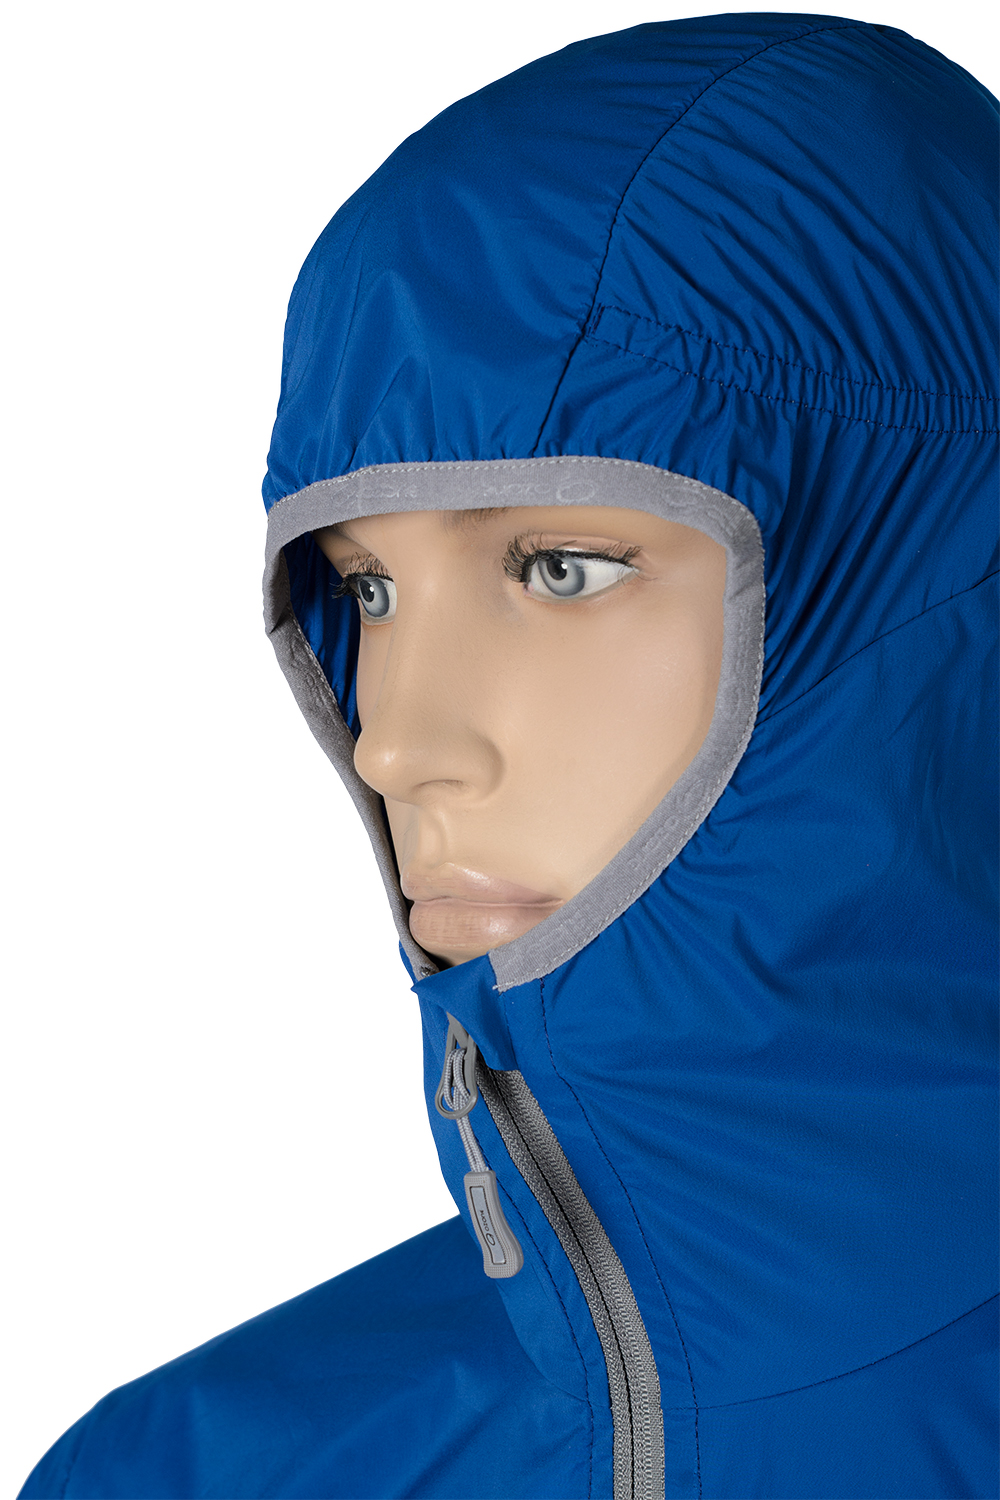 Ветрозащитная куртка Sprint купить в магазине экипировочной одежды O3 Ozone